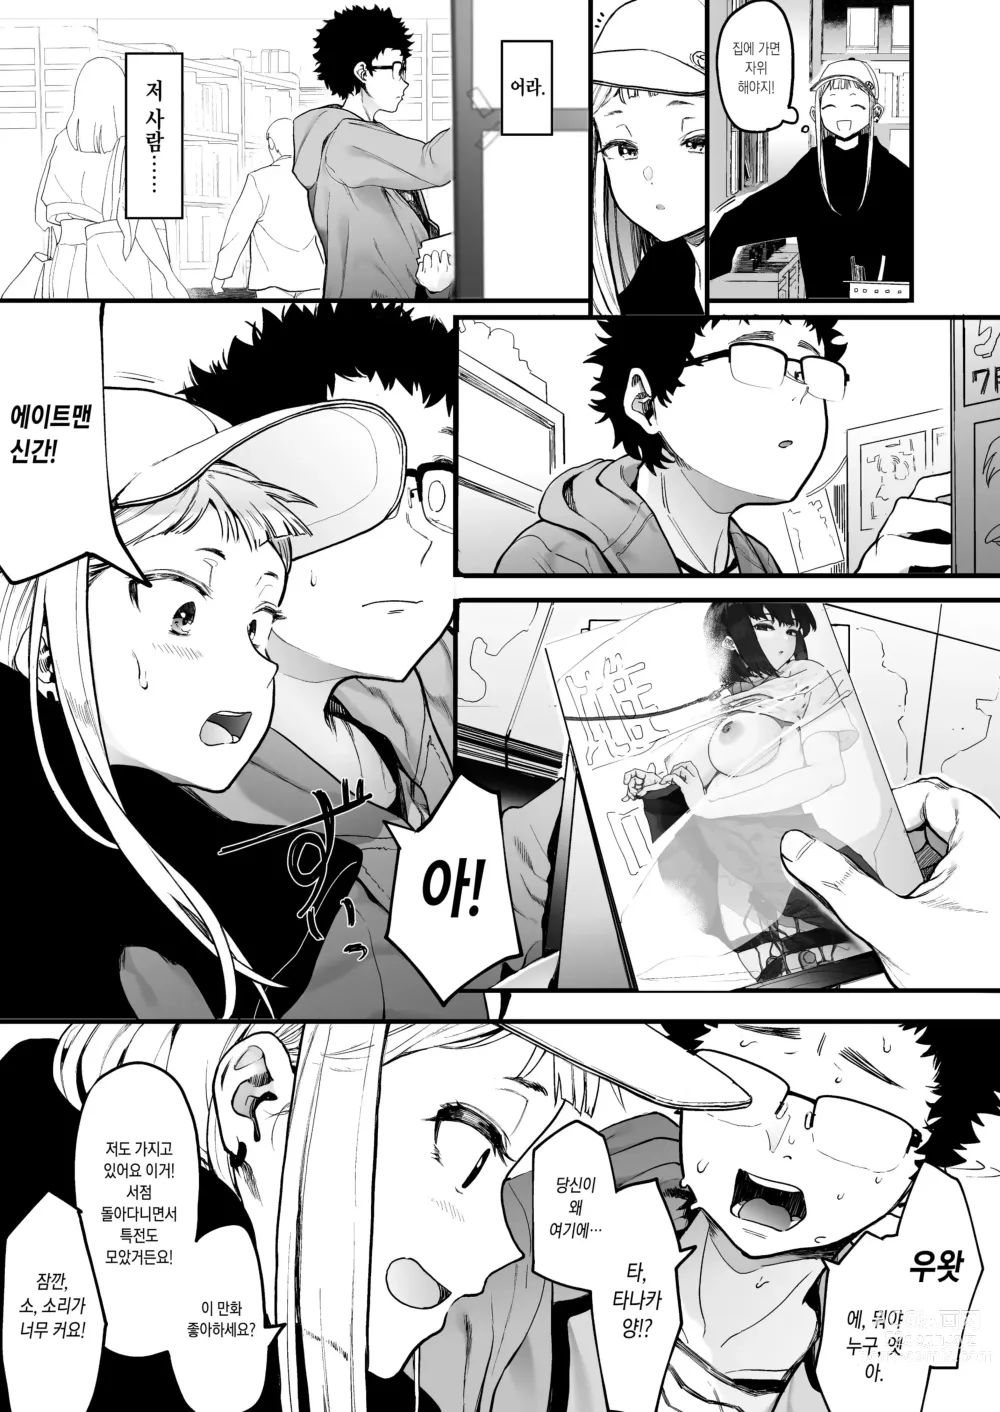 Page 4 of manga 에이트맨 선생님 덕분에 여친이 생겼습니다!